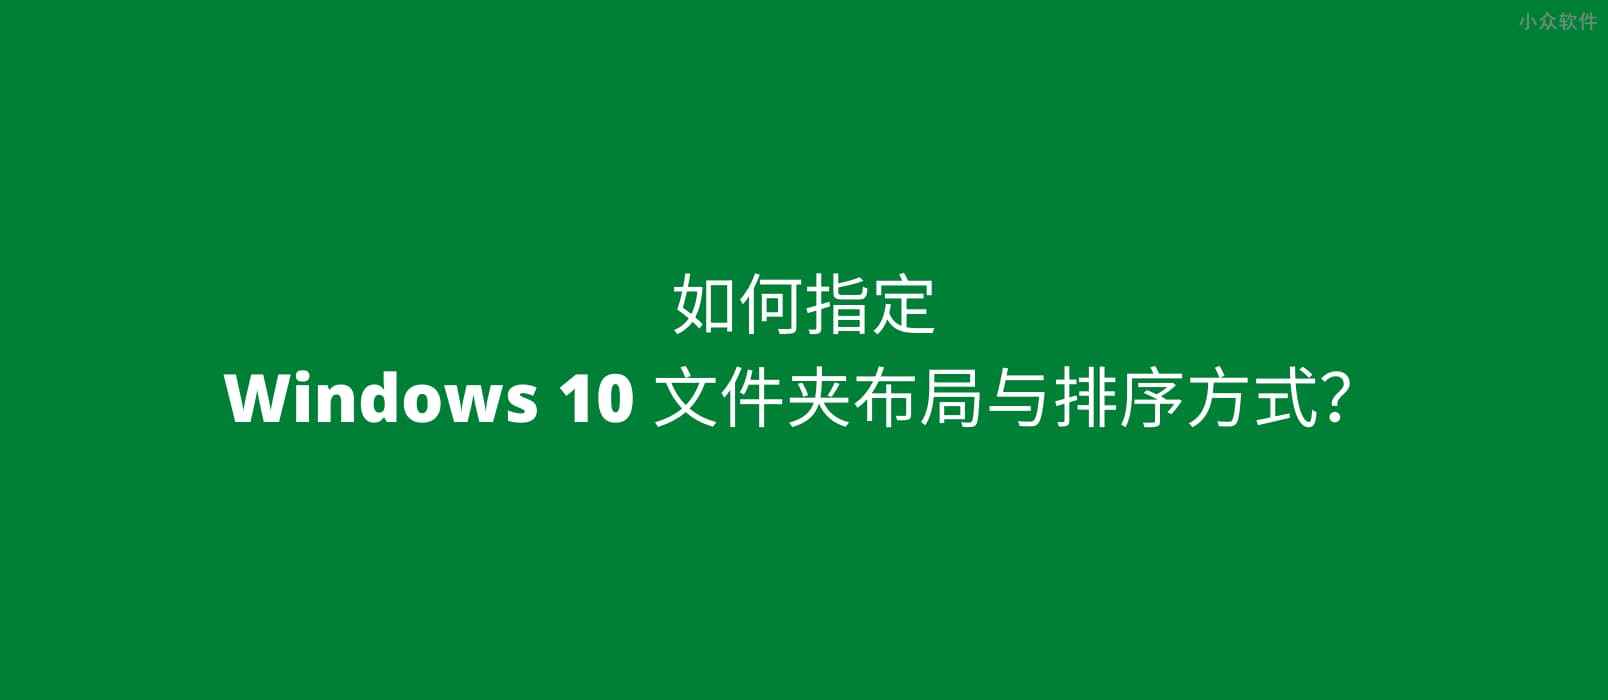 如何指定 Windows 10 文件夹布局与排序方式？